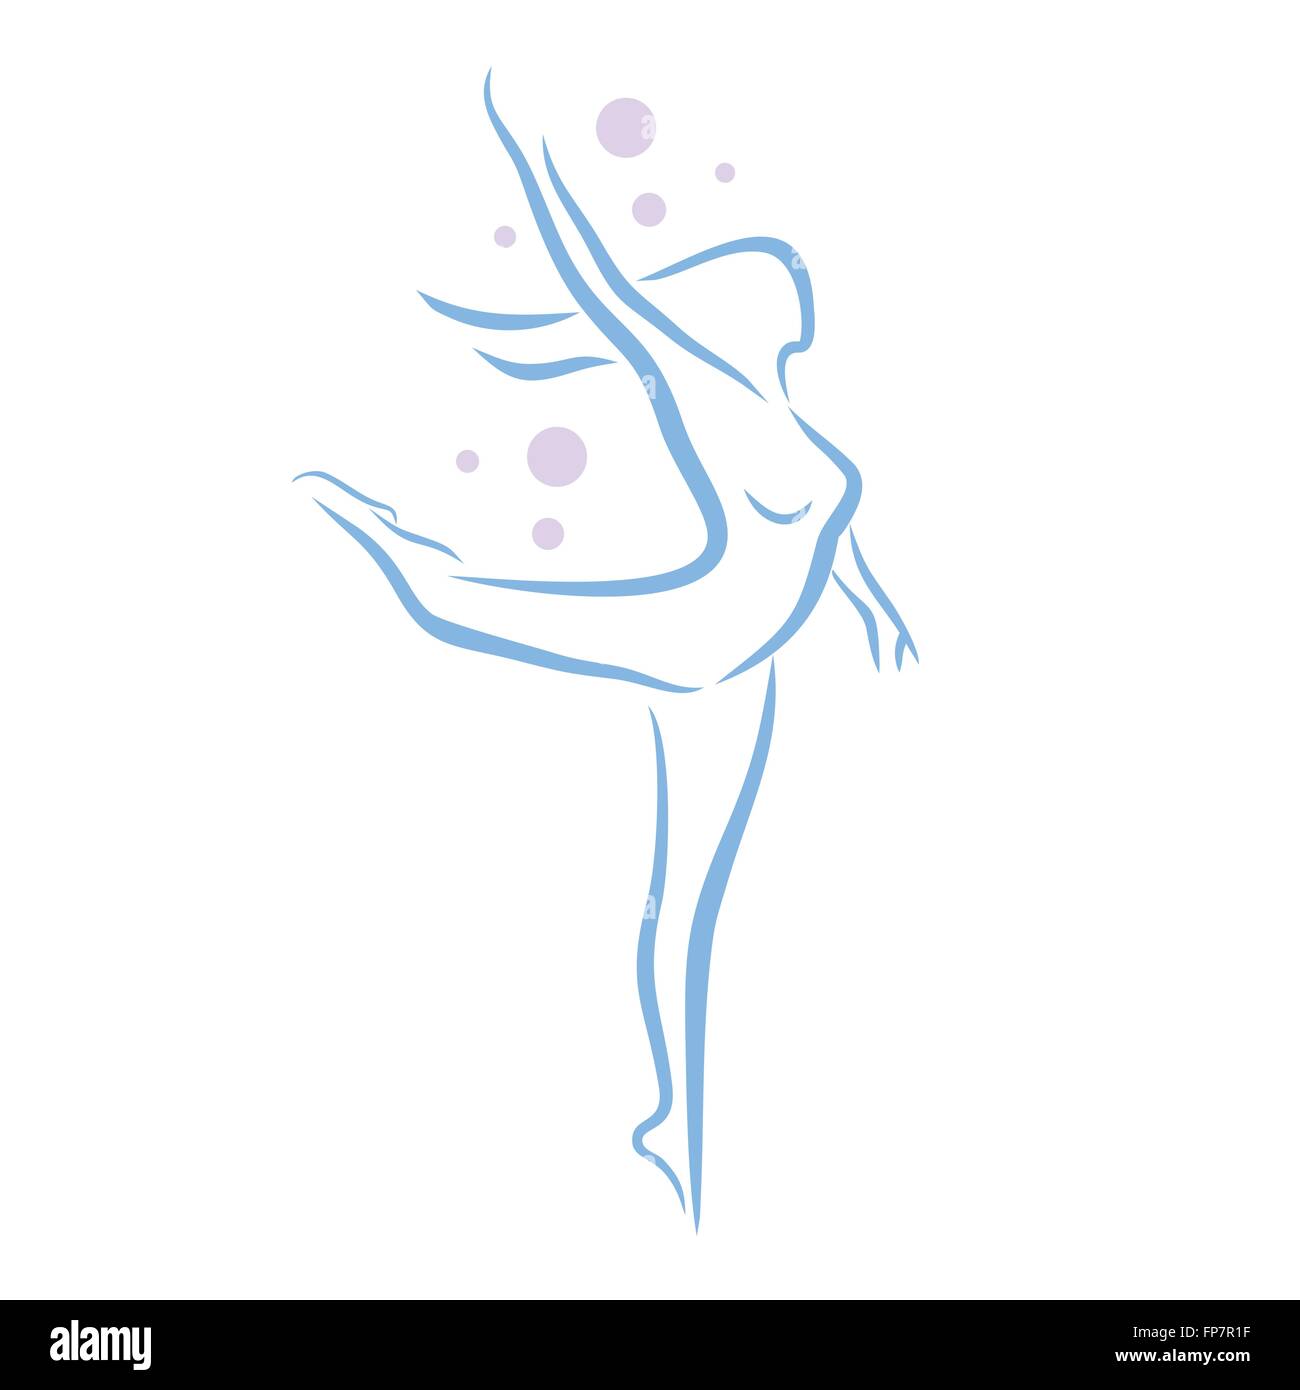 Female Ballet Dancer Reference Pose Mega Pack